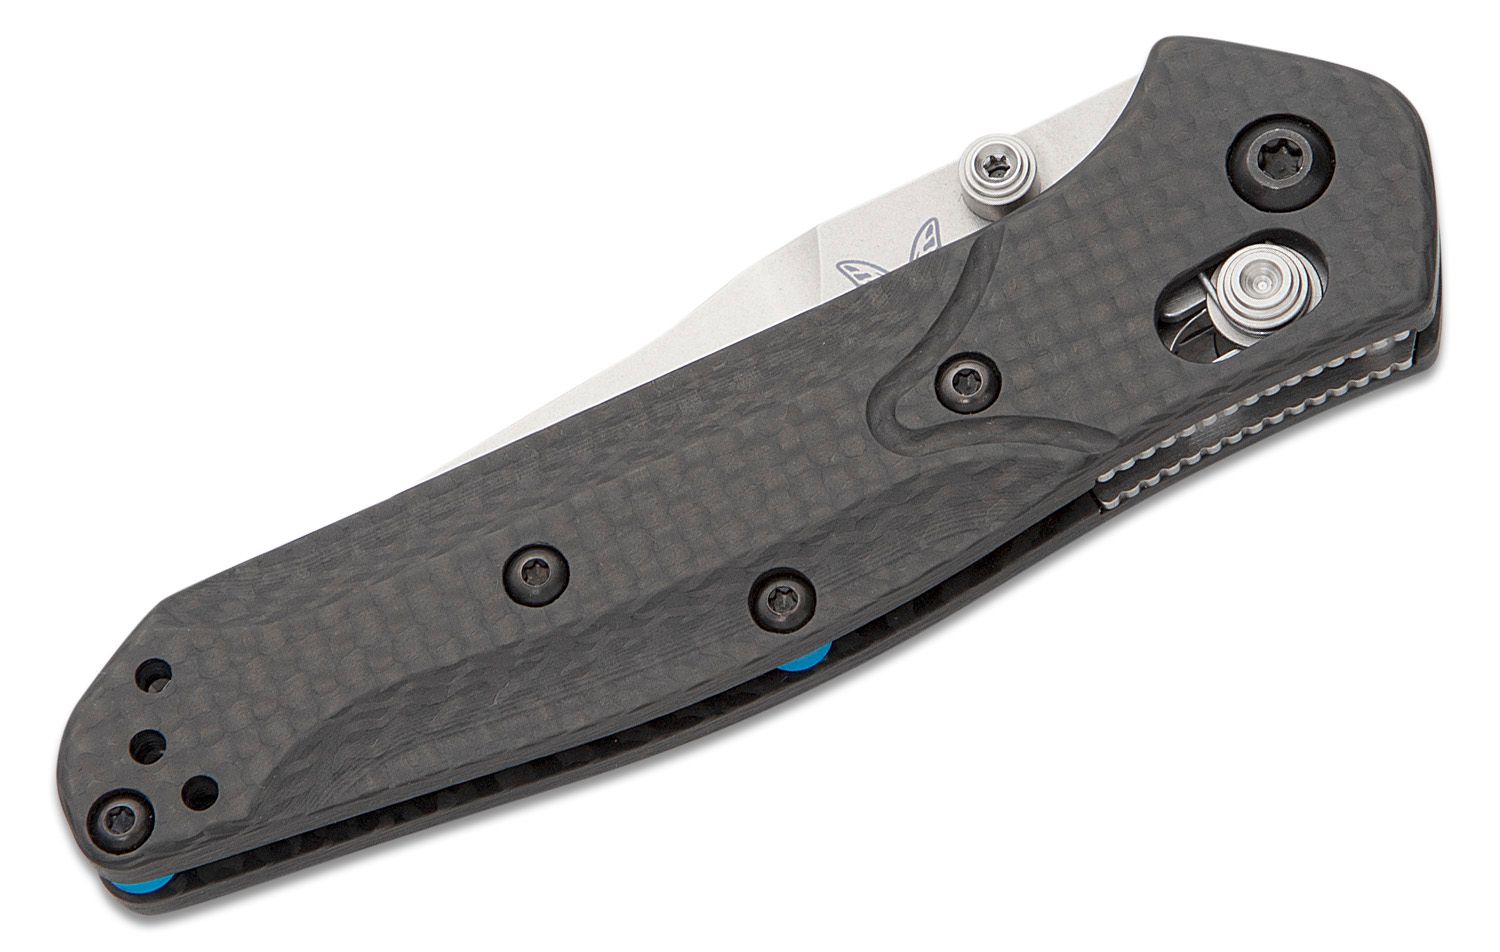 Benchmade 945-2 Mini Osborne Folding Knife 2.92